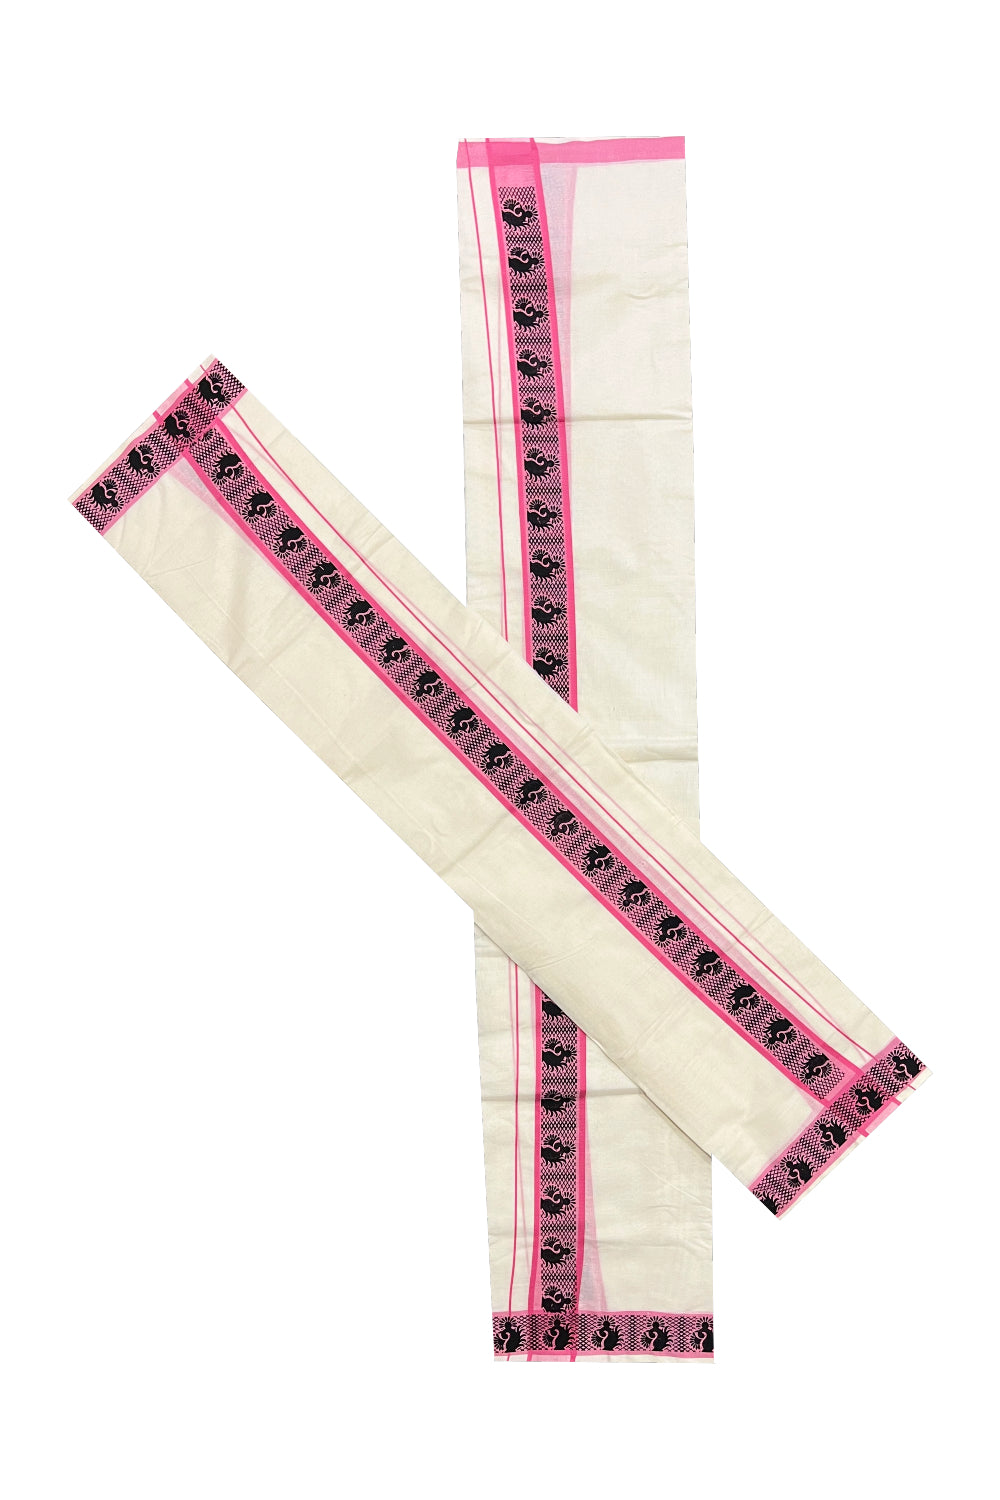 Kerala Cotton Set Mundu (Mundum Neriyathum) with Black Paisley Block Prints in Pink Border